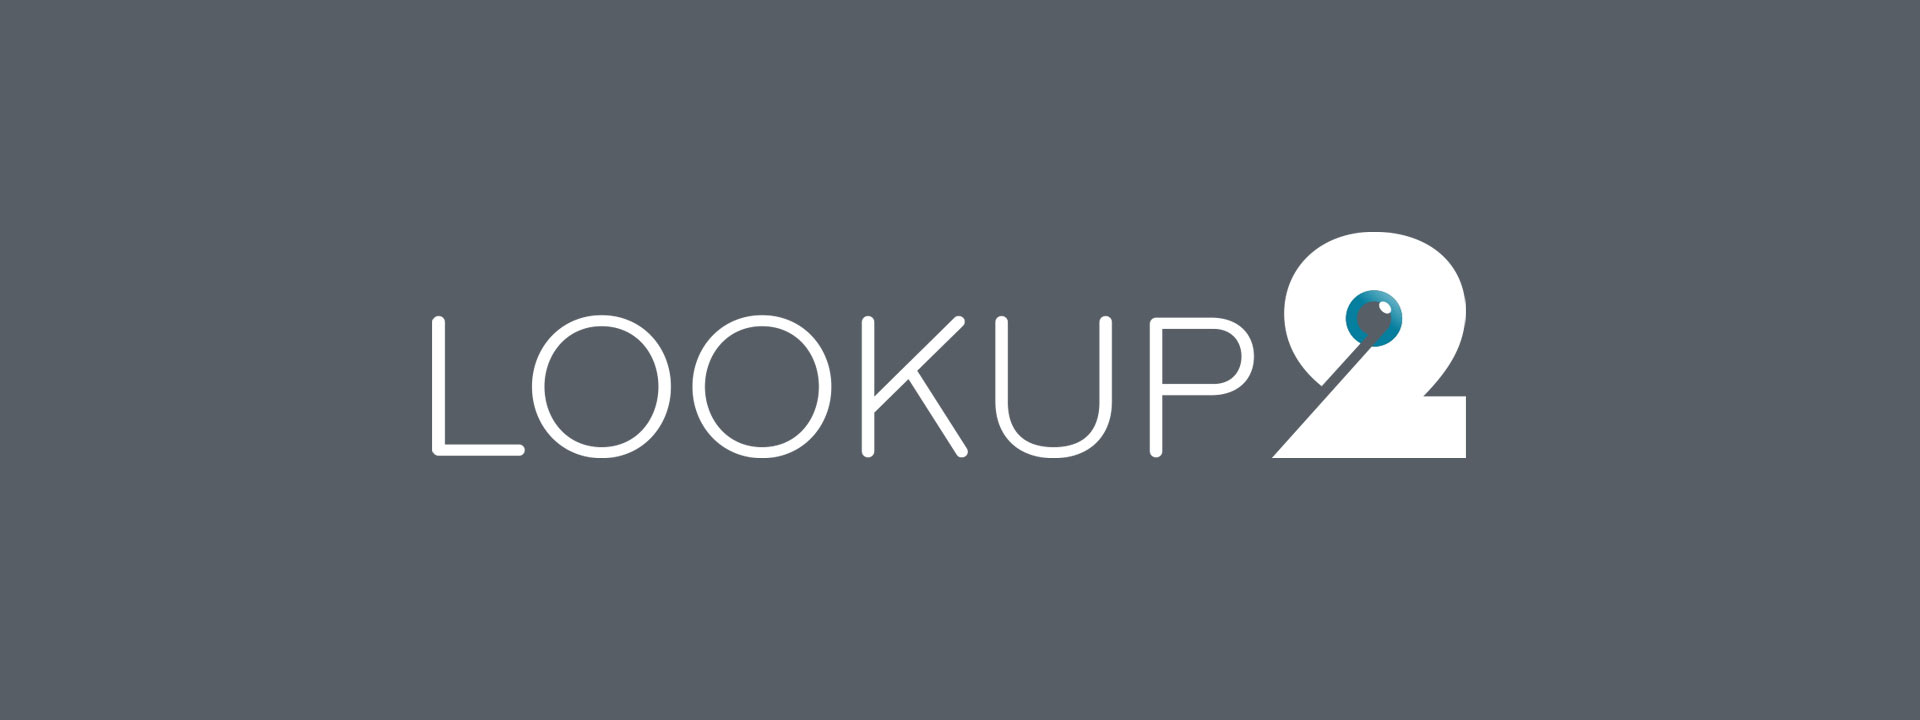 Lookup2 Logo mehrsprachiger Internetauftritt mit Wordpress